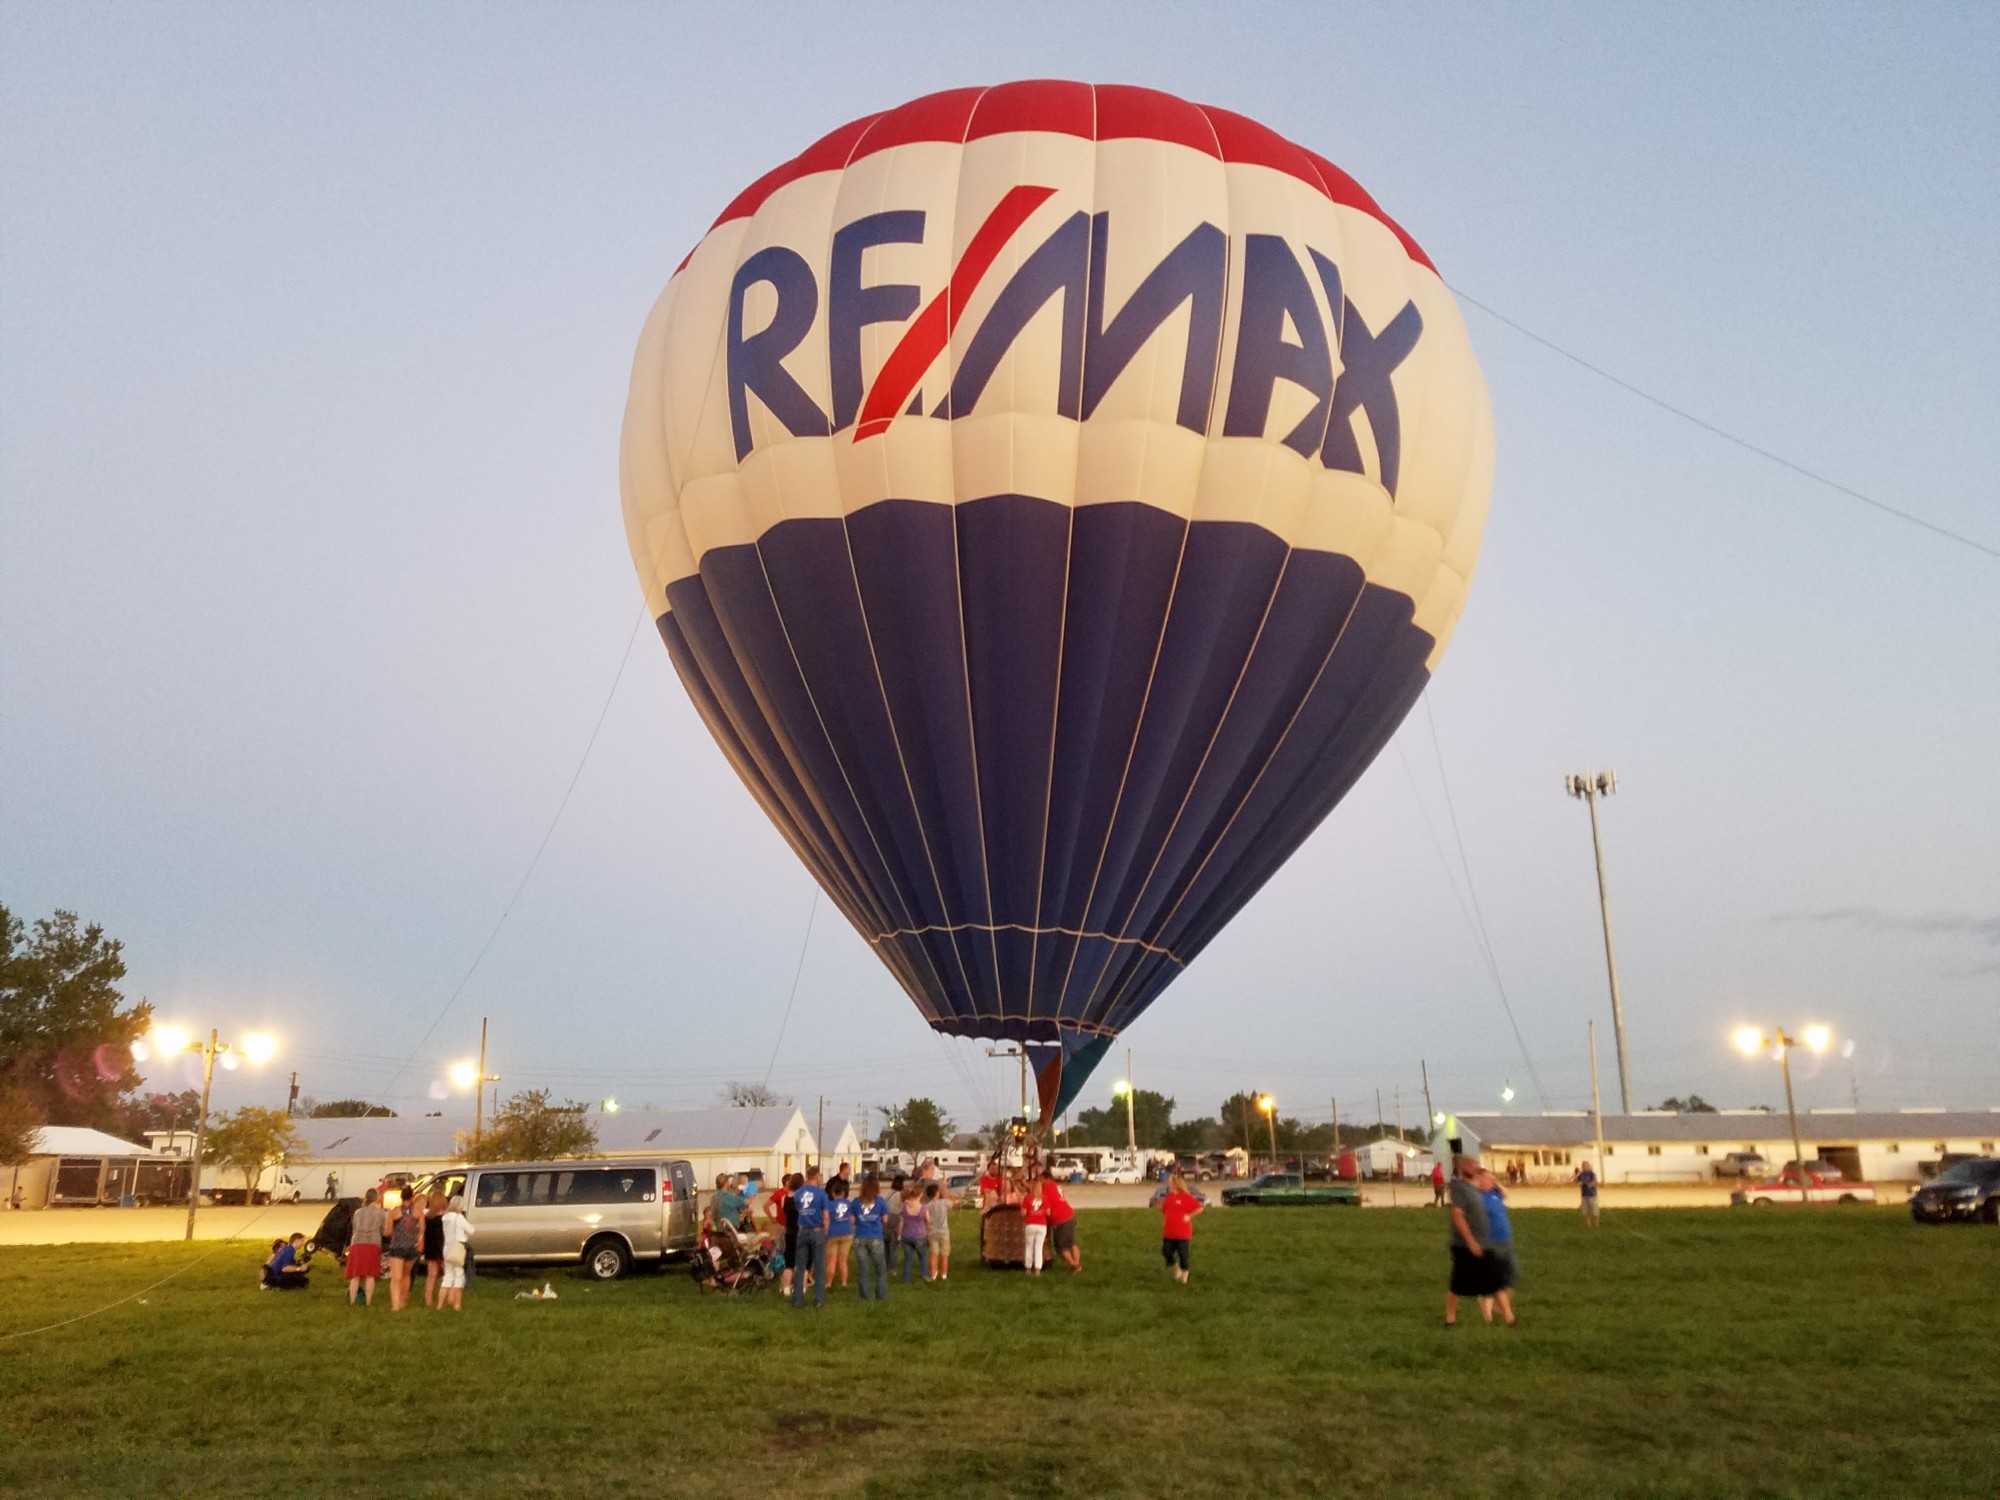 RE/MAX Hot-Air Balloon at the 181st Annual Seneca County Fair